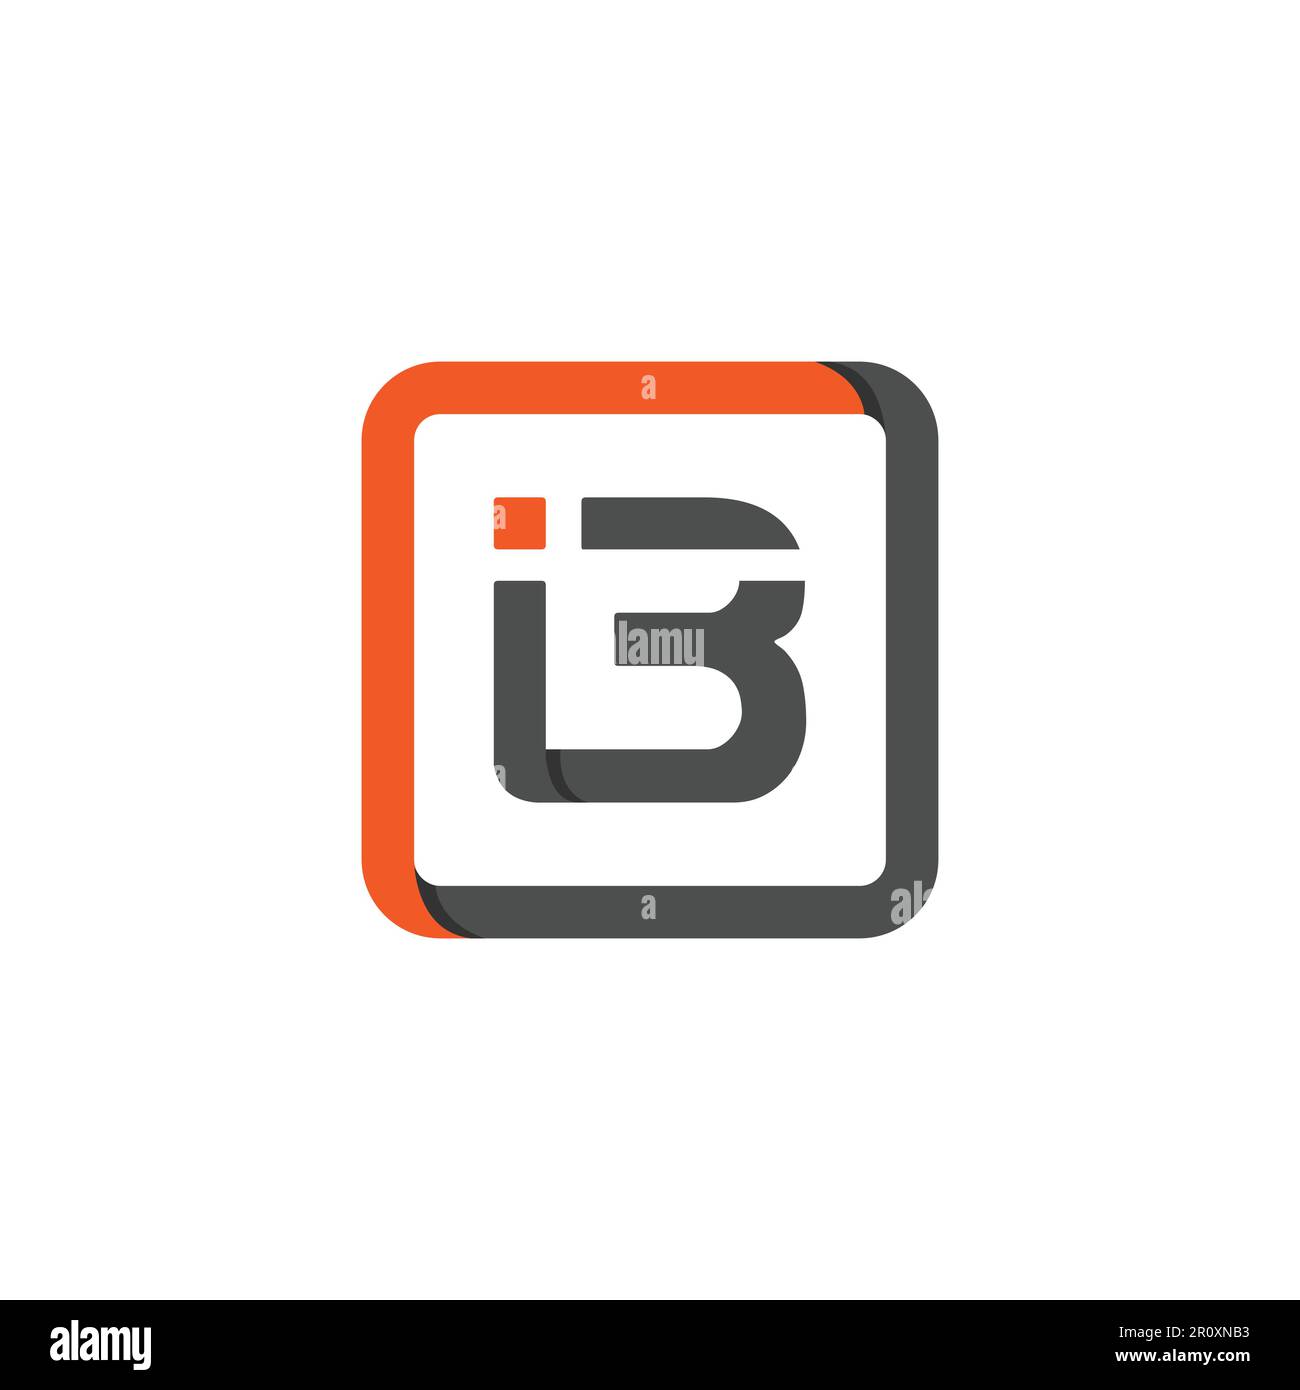 i3 concetto creativo di design moderno del logo. Combinazione della lettera i con il simbolo numero 3 all'interno della forma quadrata Illustrazione Vettoriale